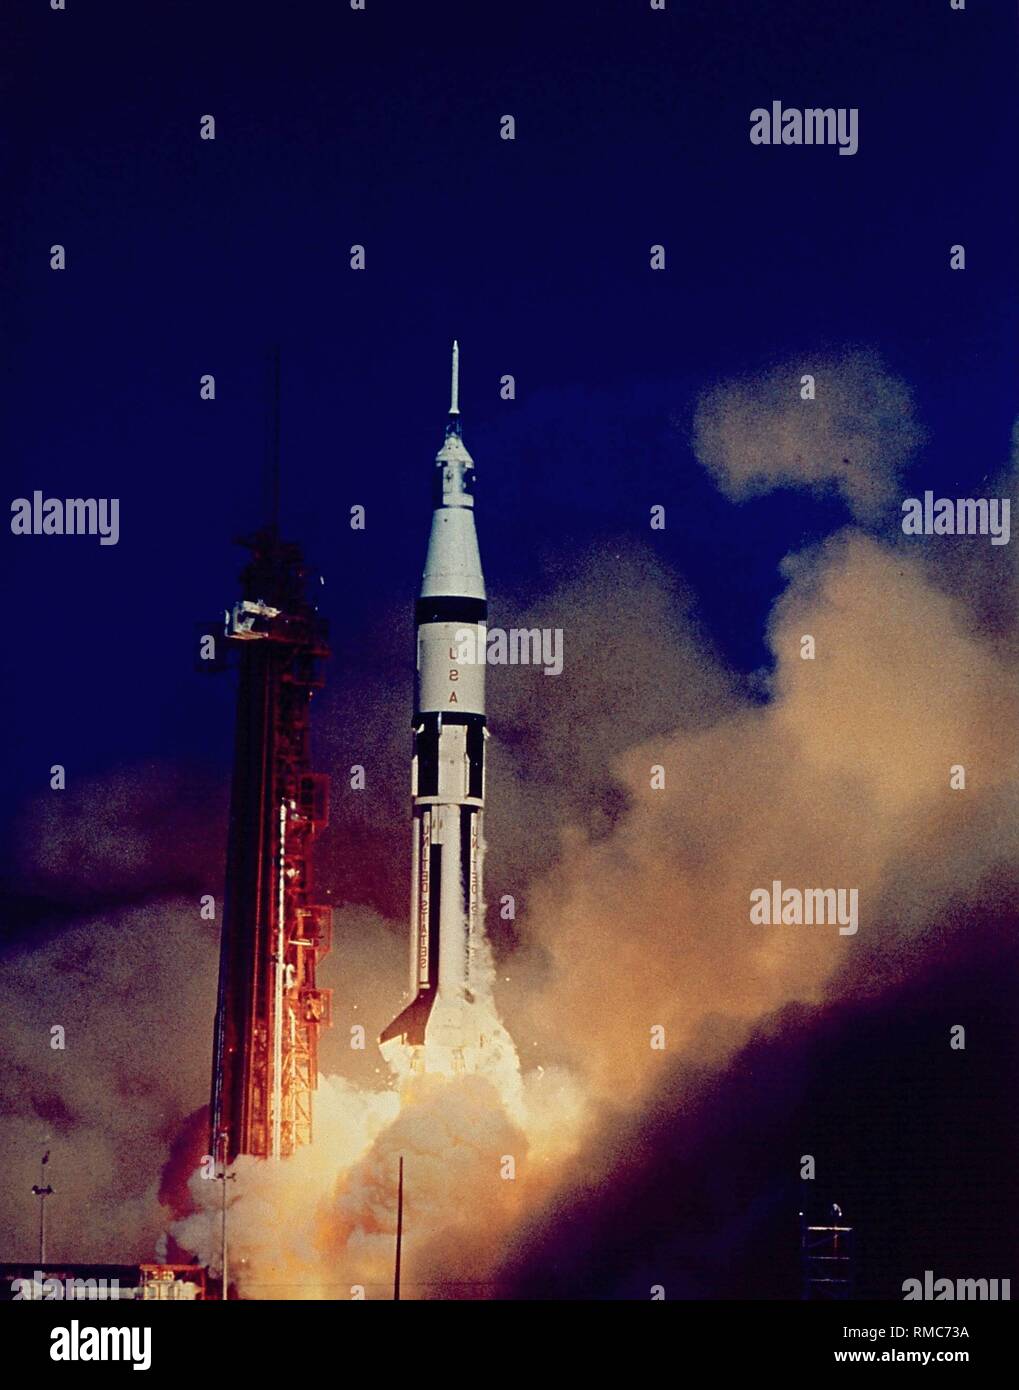 Le décollage d'Apollo 7 au cours de la première phase. Cette mission Apollo a été le seul à être lancé dans l'espace avec une Saturn 1B Véhicule de lancement. Apollo 7 est le premier test du module de commande Apollo (commande et module de service). Banque D'Images